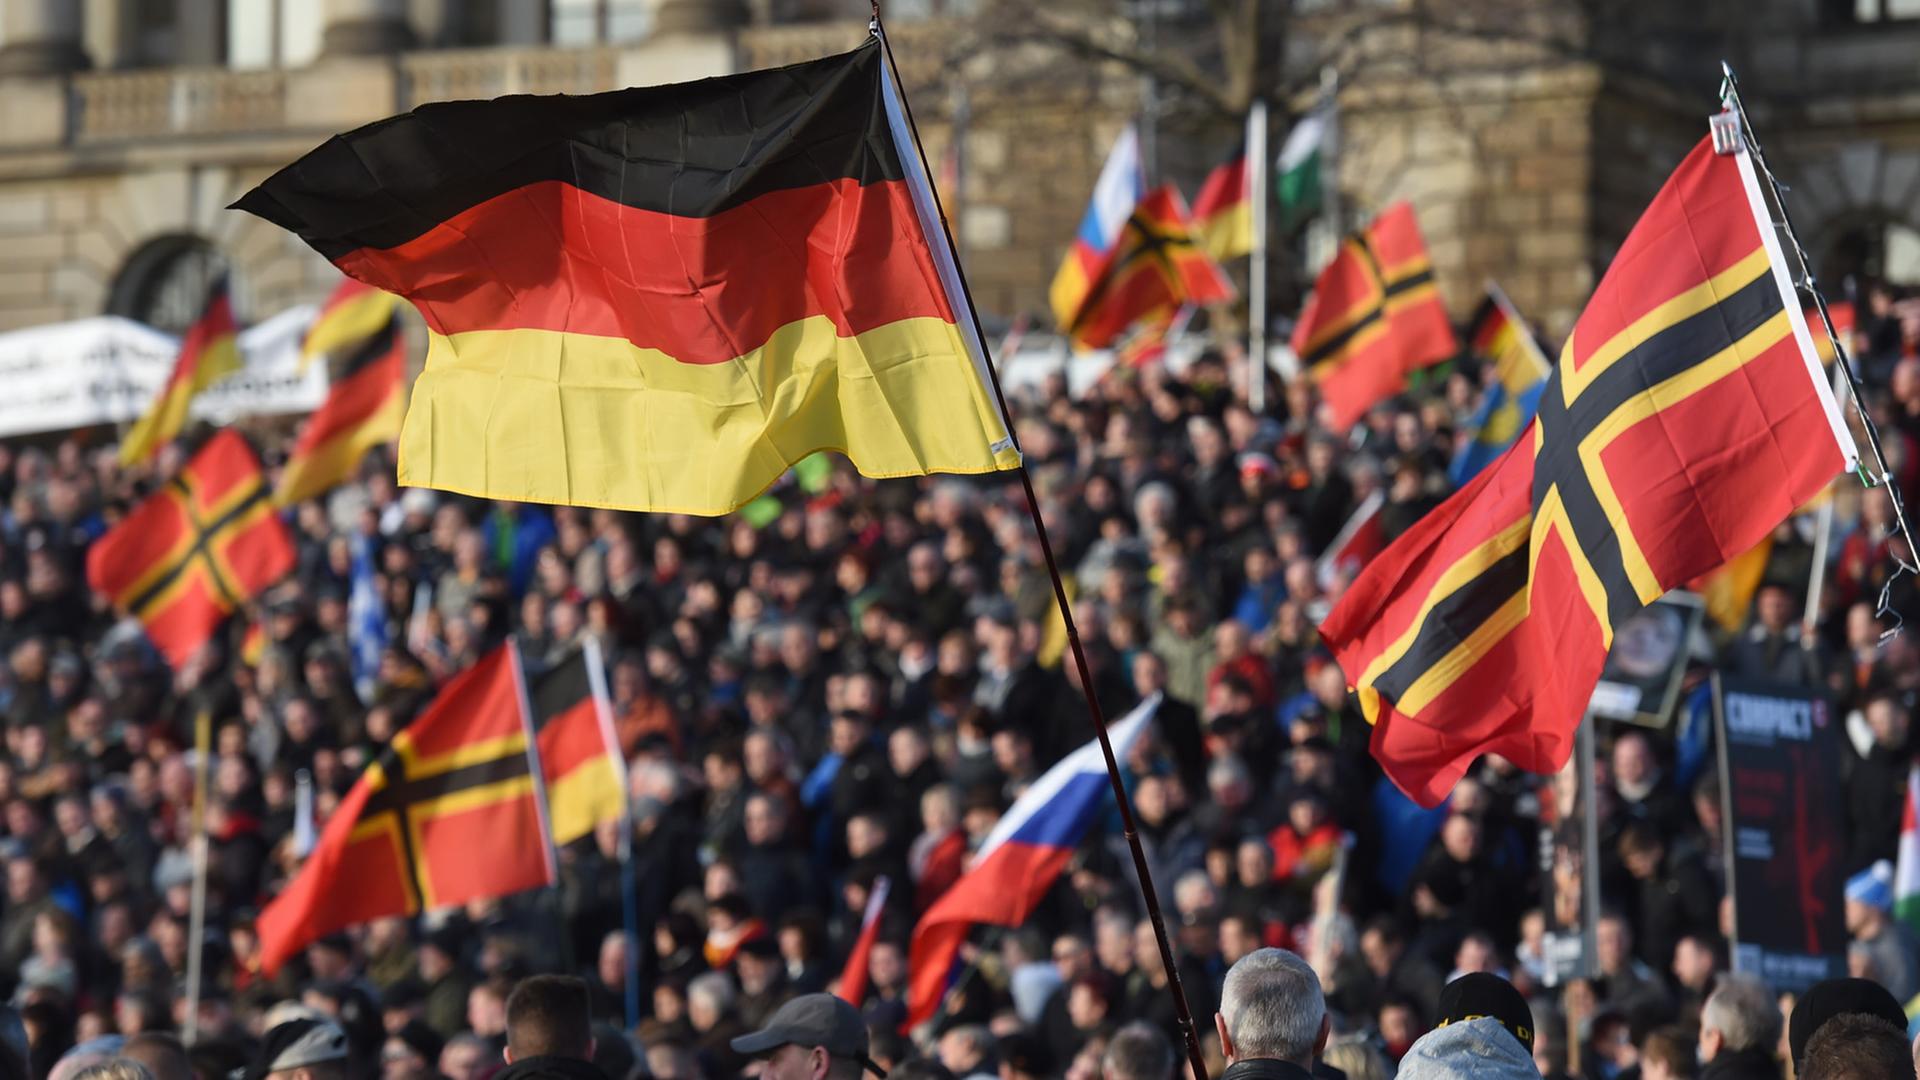 Teilnehmer einer Kundgebung der fremden- und islamfeindlichen "Patriotischen Europäer gegen die Islamisierung des Abendlandes" (Pegida) in Dresden